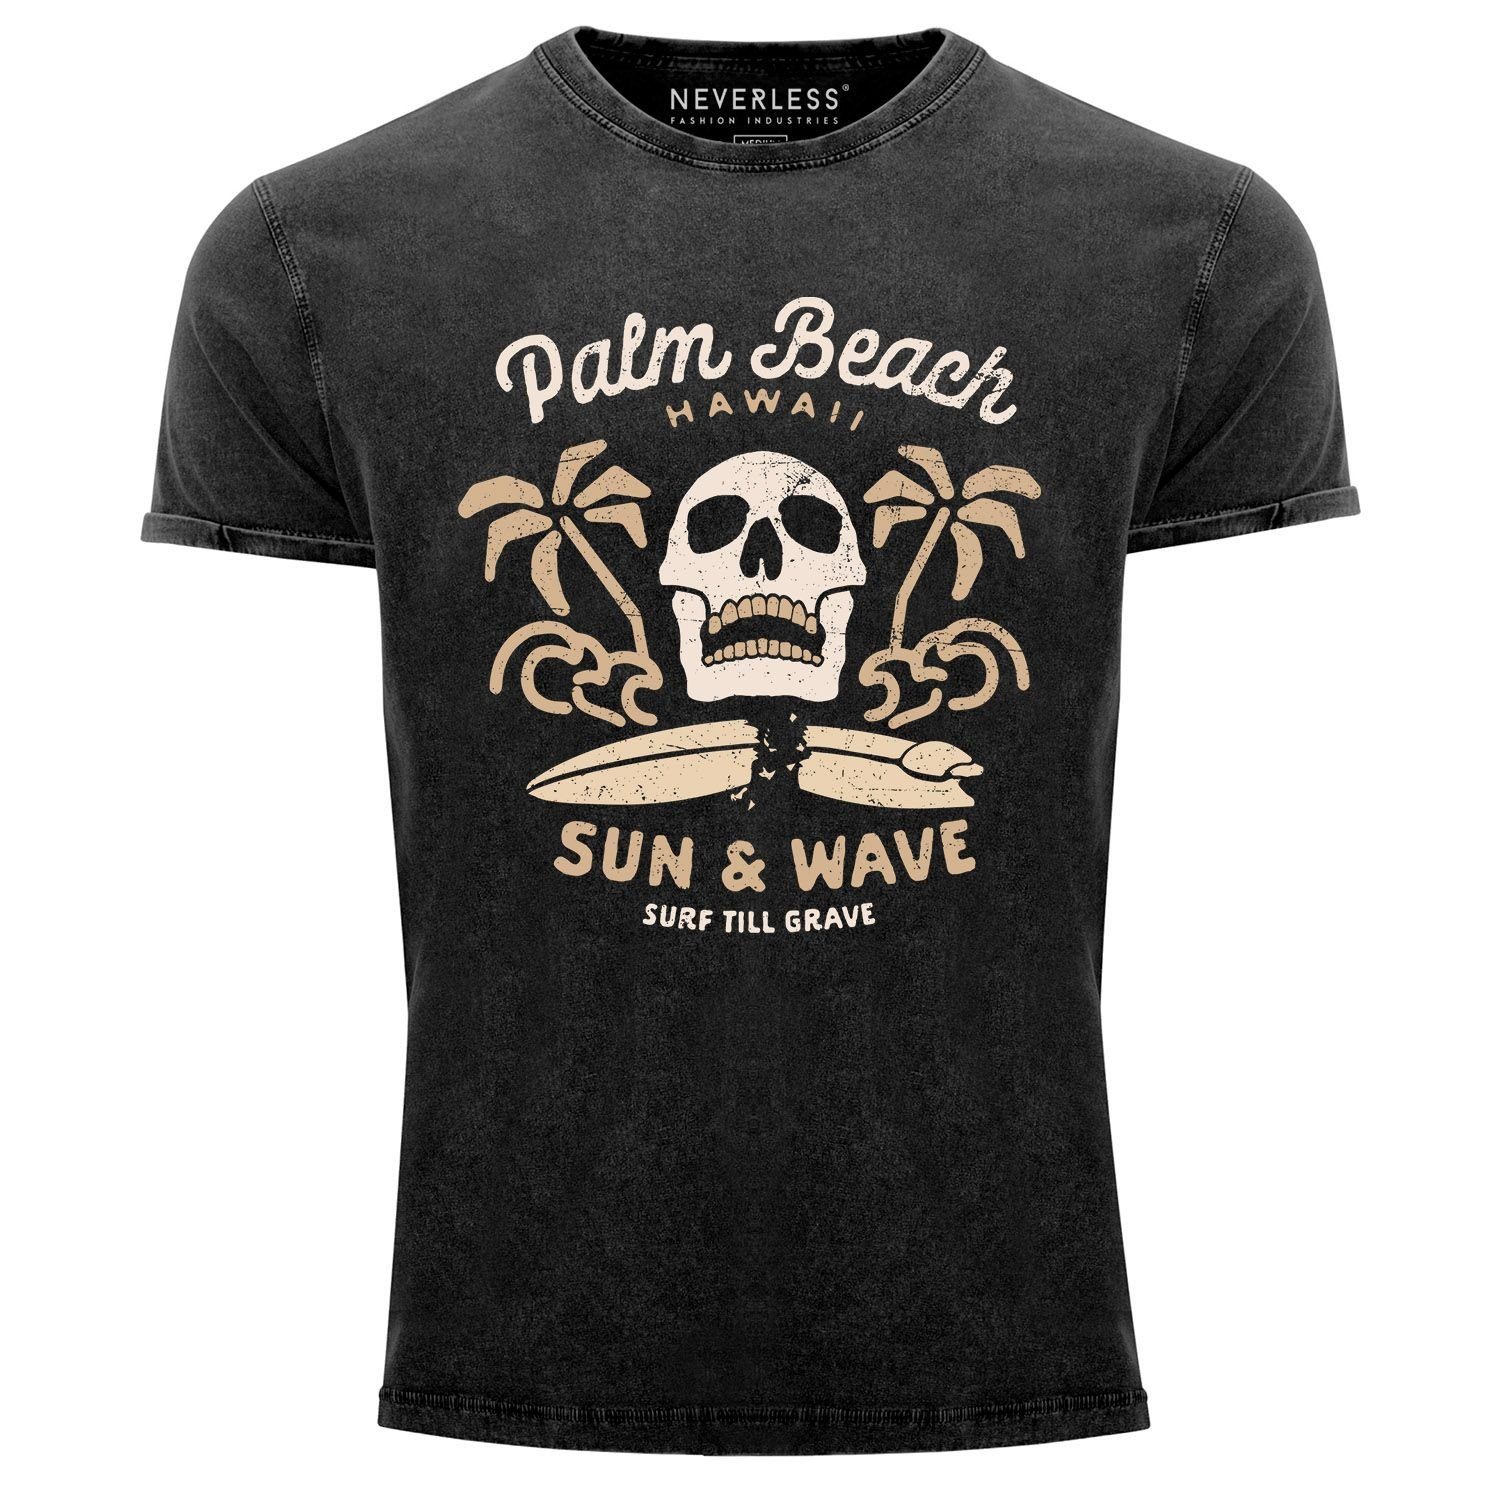 Neverless Print-Shirt Neverless® Herren T-Shirt Surf-Motiv Totenkopf Palm Beach Vintage Shirt mit Print schwarz